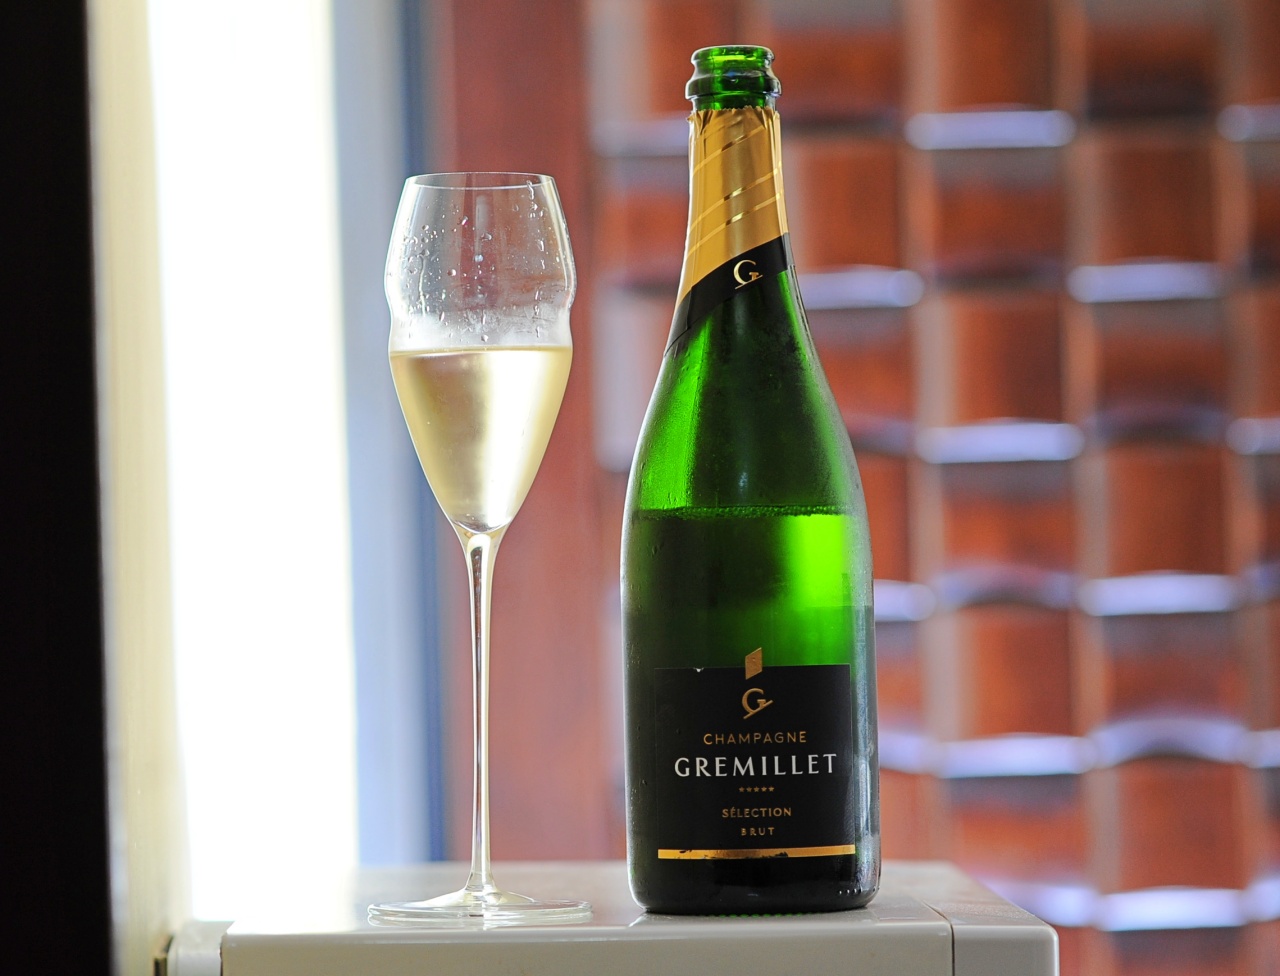 Gremillet Selection Brut Champagne